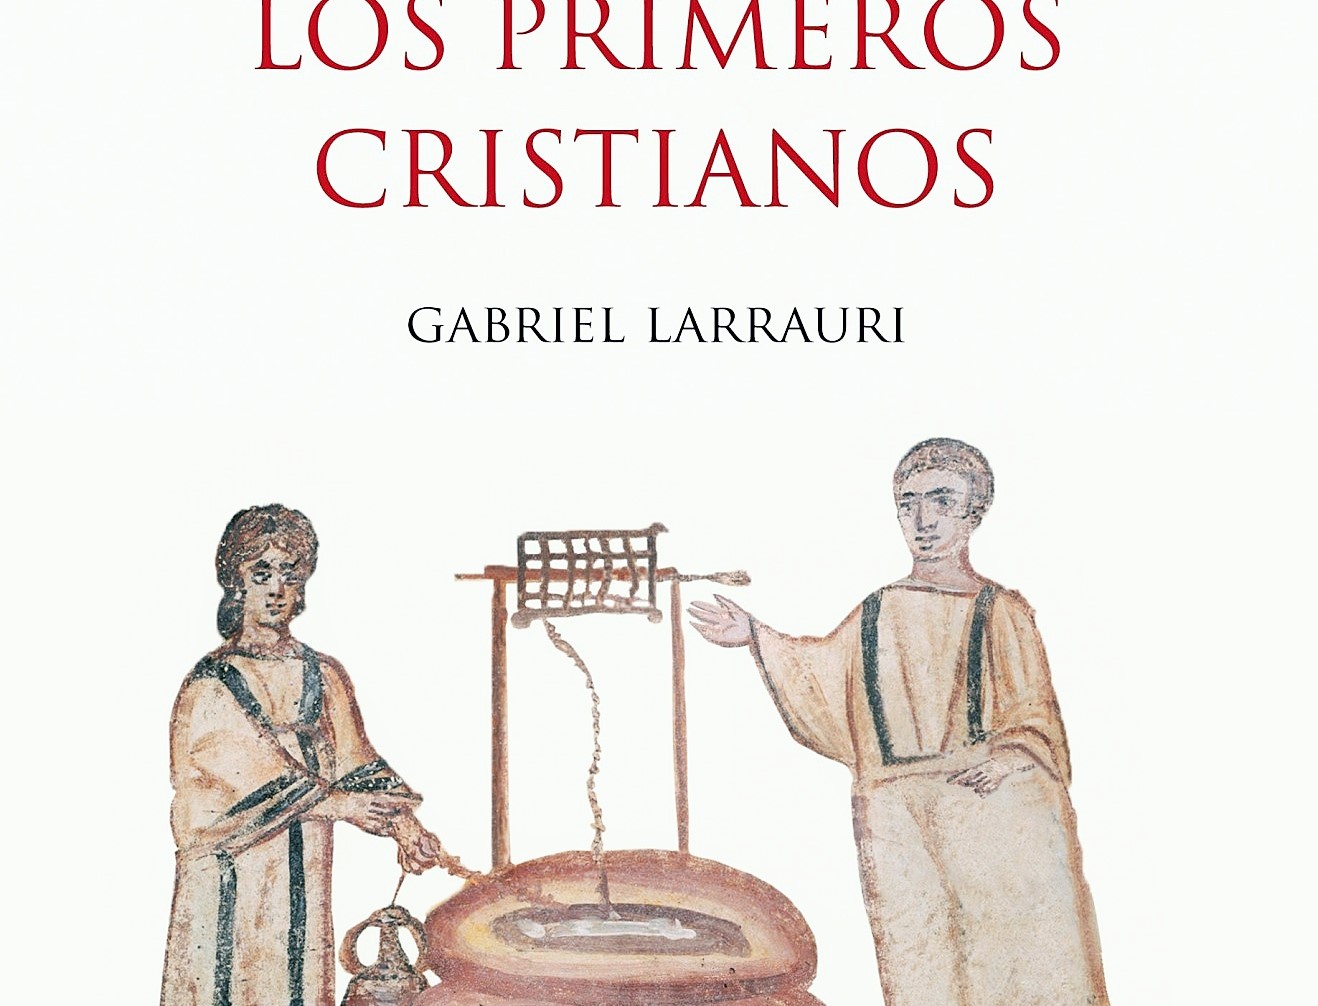 orar primeros cristianos Gabriel larrauri 2 (2)